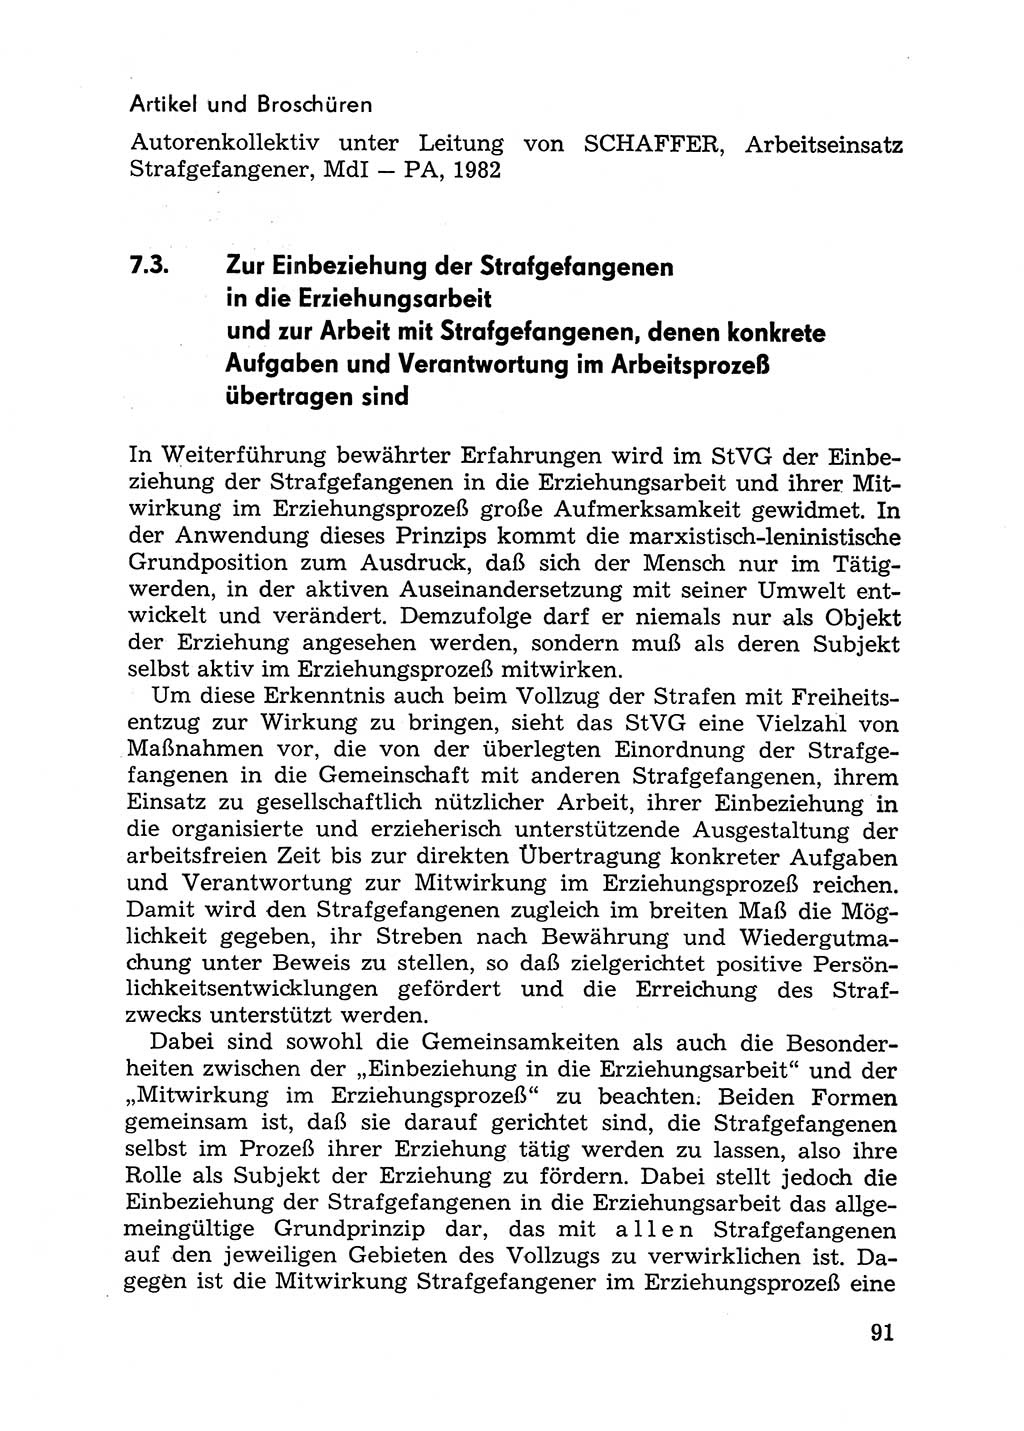 Handbuch für Betriebsangehörige, Abteilung Strafvollzug (SV) [Ministerium des Innern (MdI) Deutsche Demokratische Republik (DDR)] 1981, Seite 91 (Hb. BA Abt. SV MdI DDR 1981, S. 91)